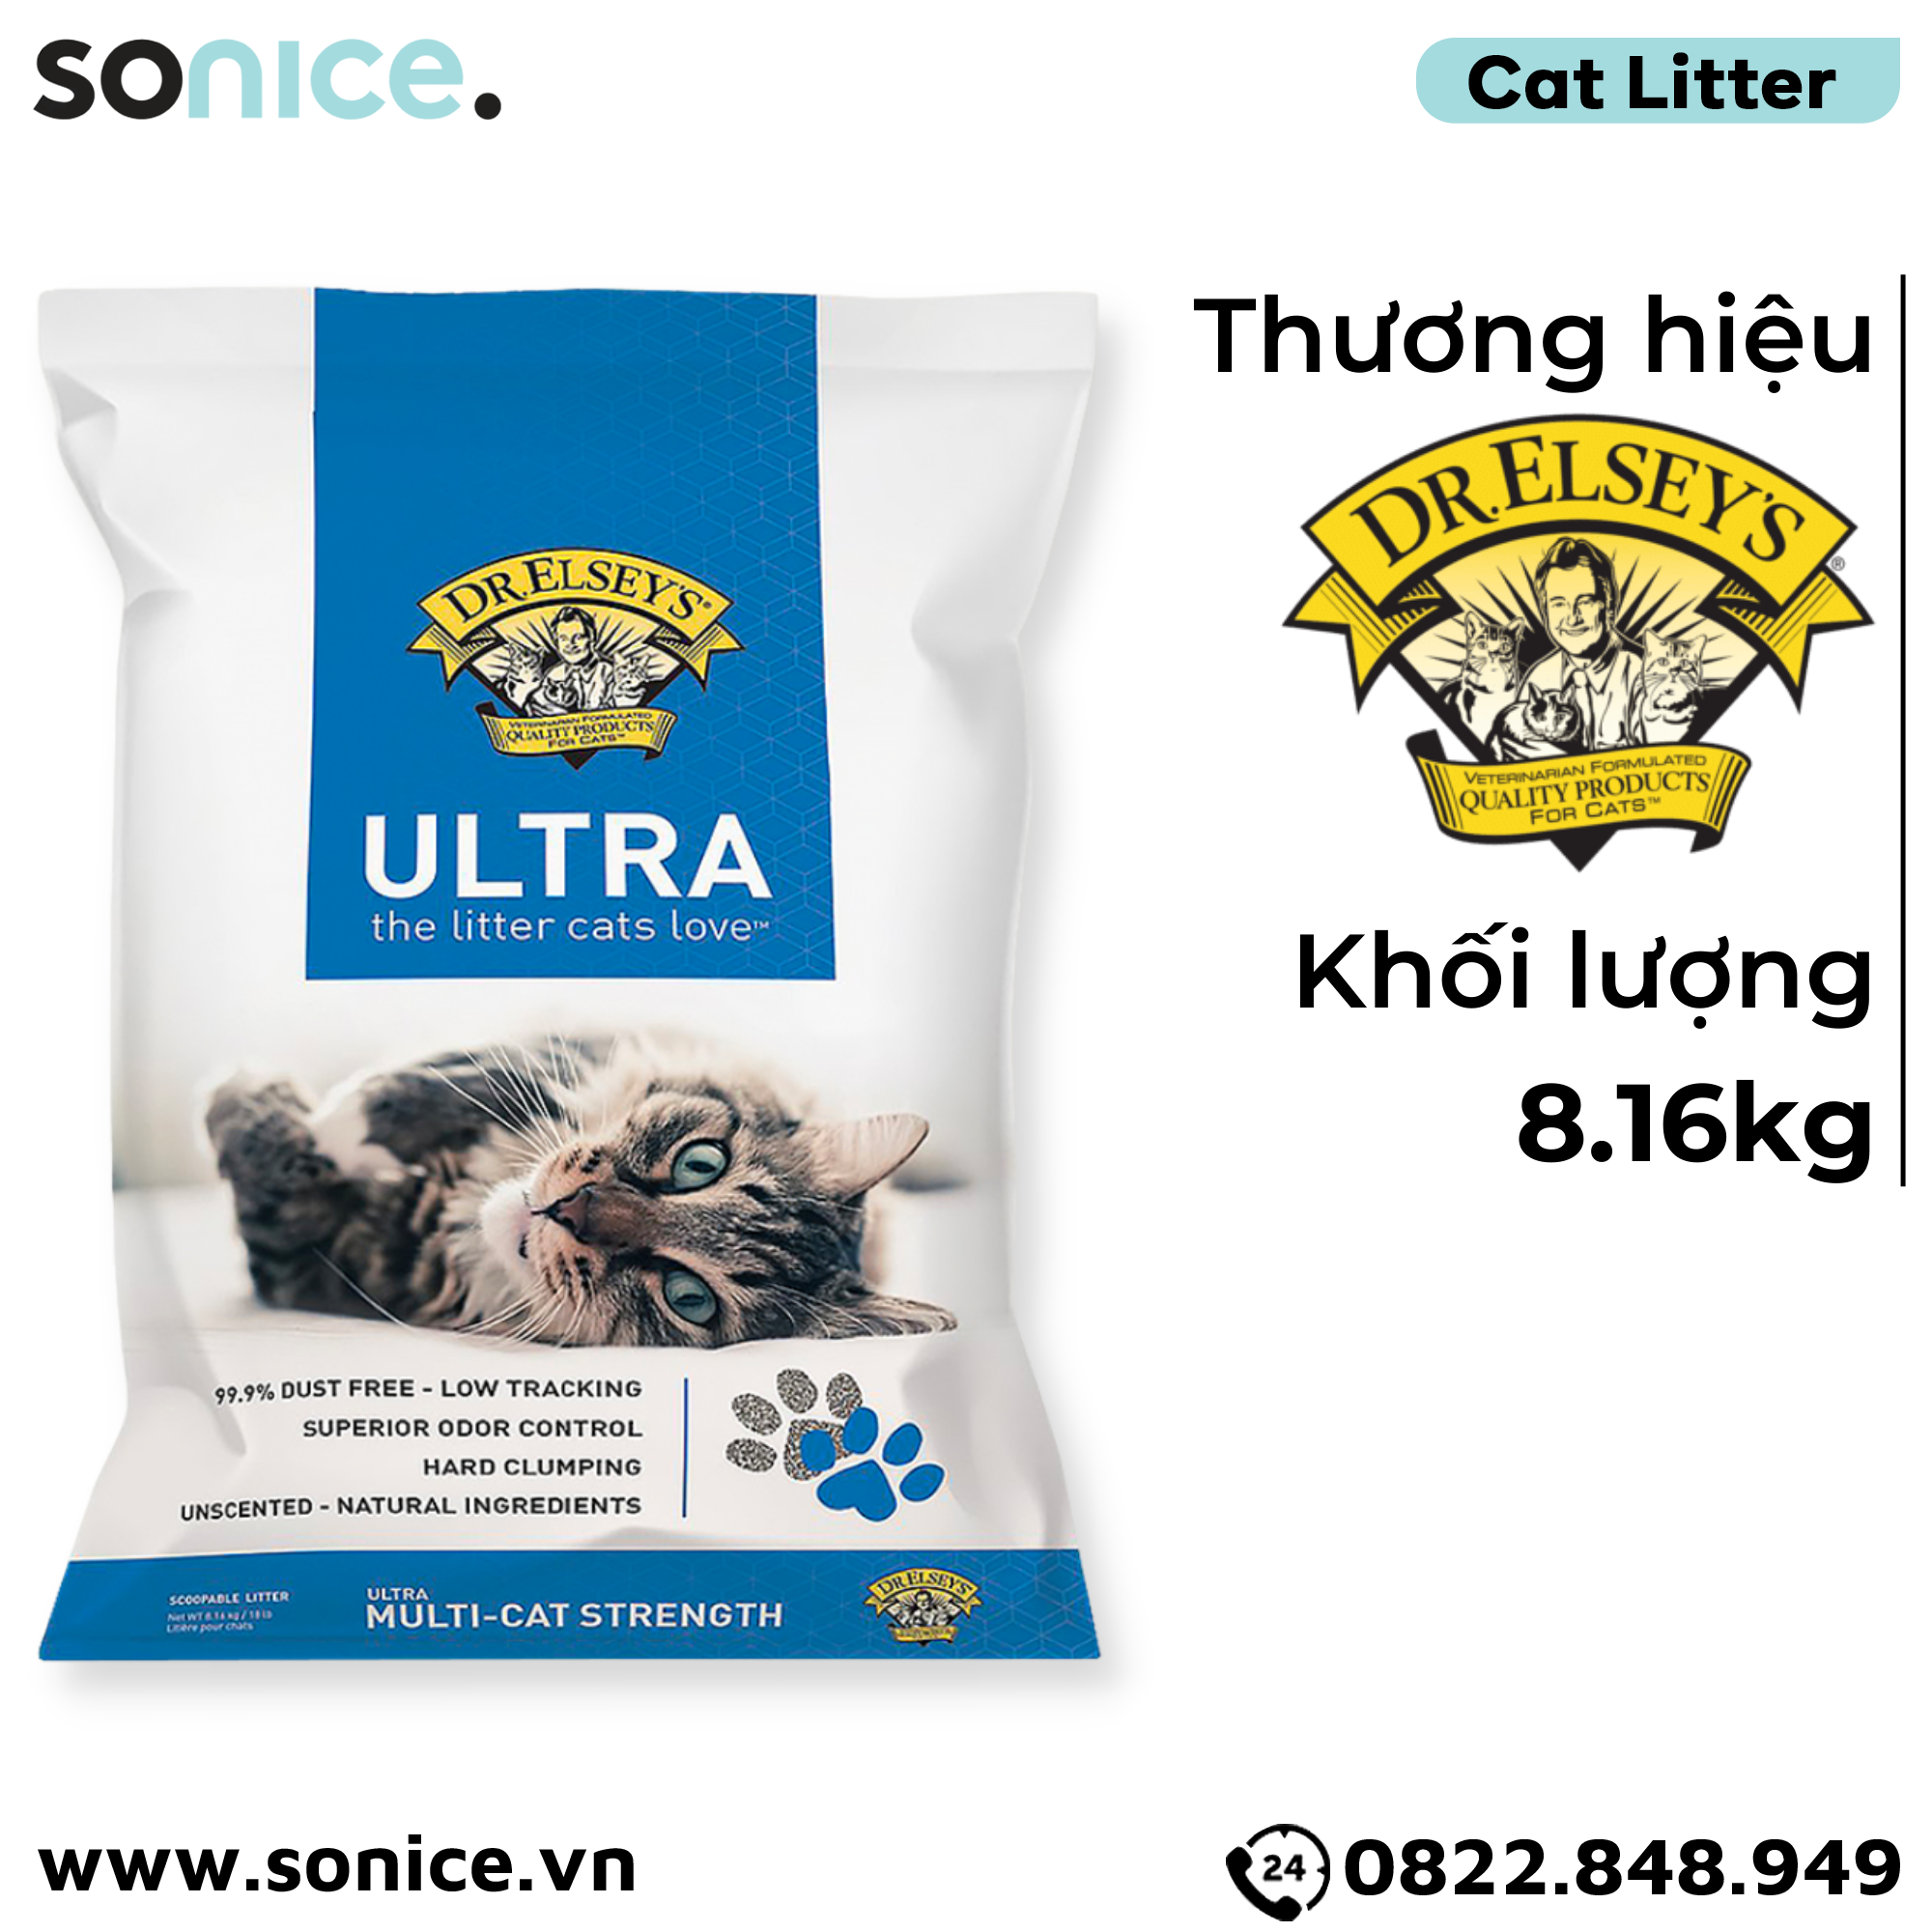  Cát vệ sinh Dr.ELSYES Precious Cat Ultra Unscented 8.16kg - Không mùi SONICE. 